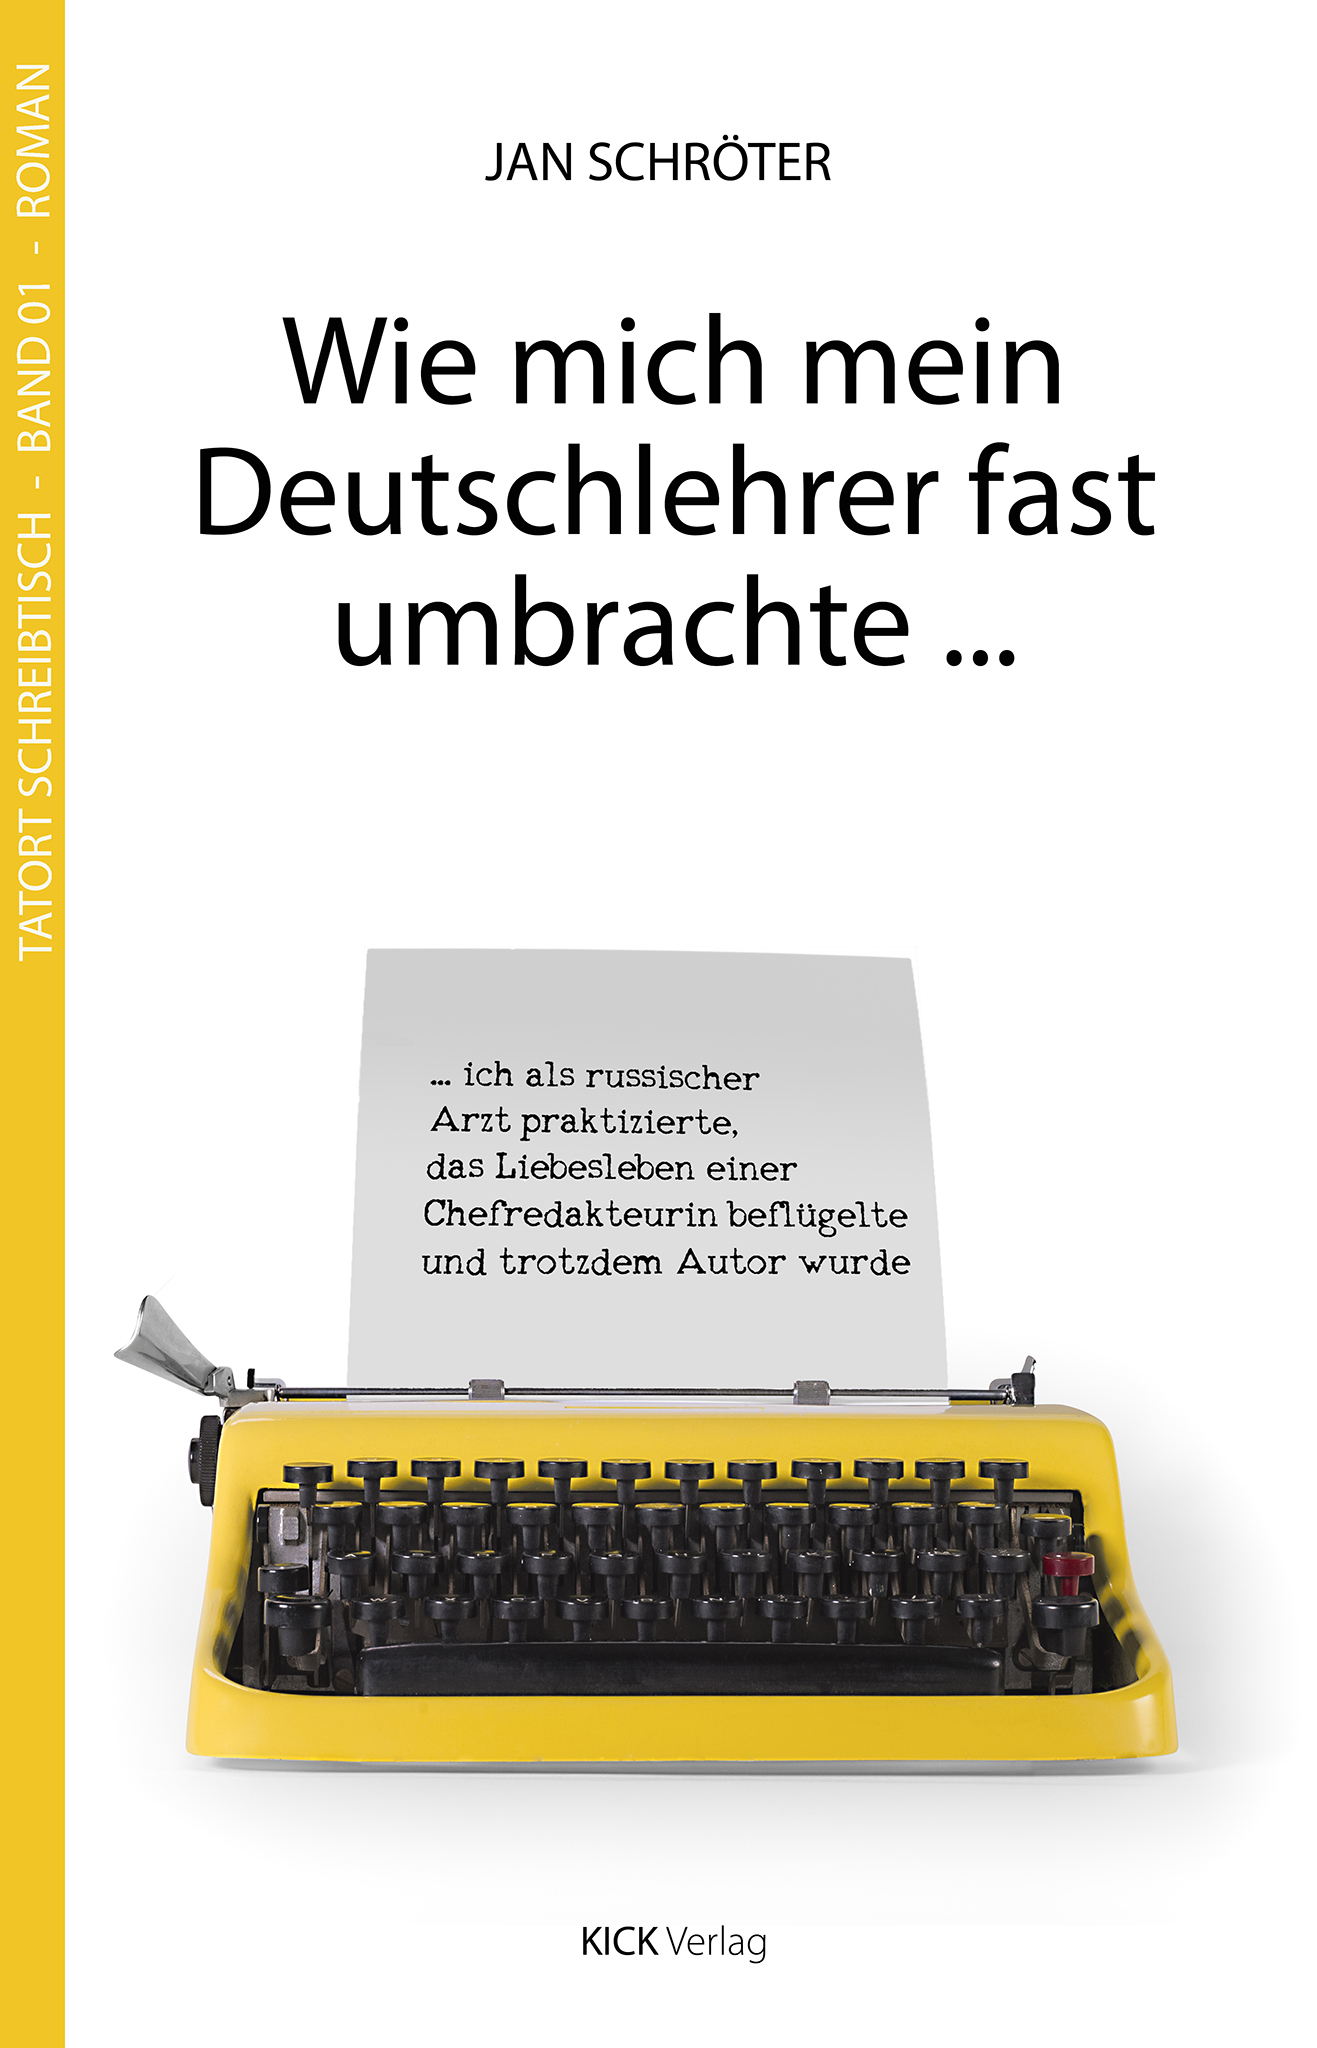 Wie_mich_mein_Deutschlehrer-Cover.jpg